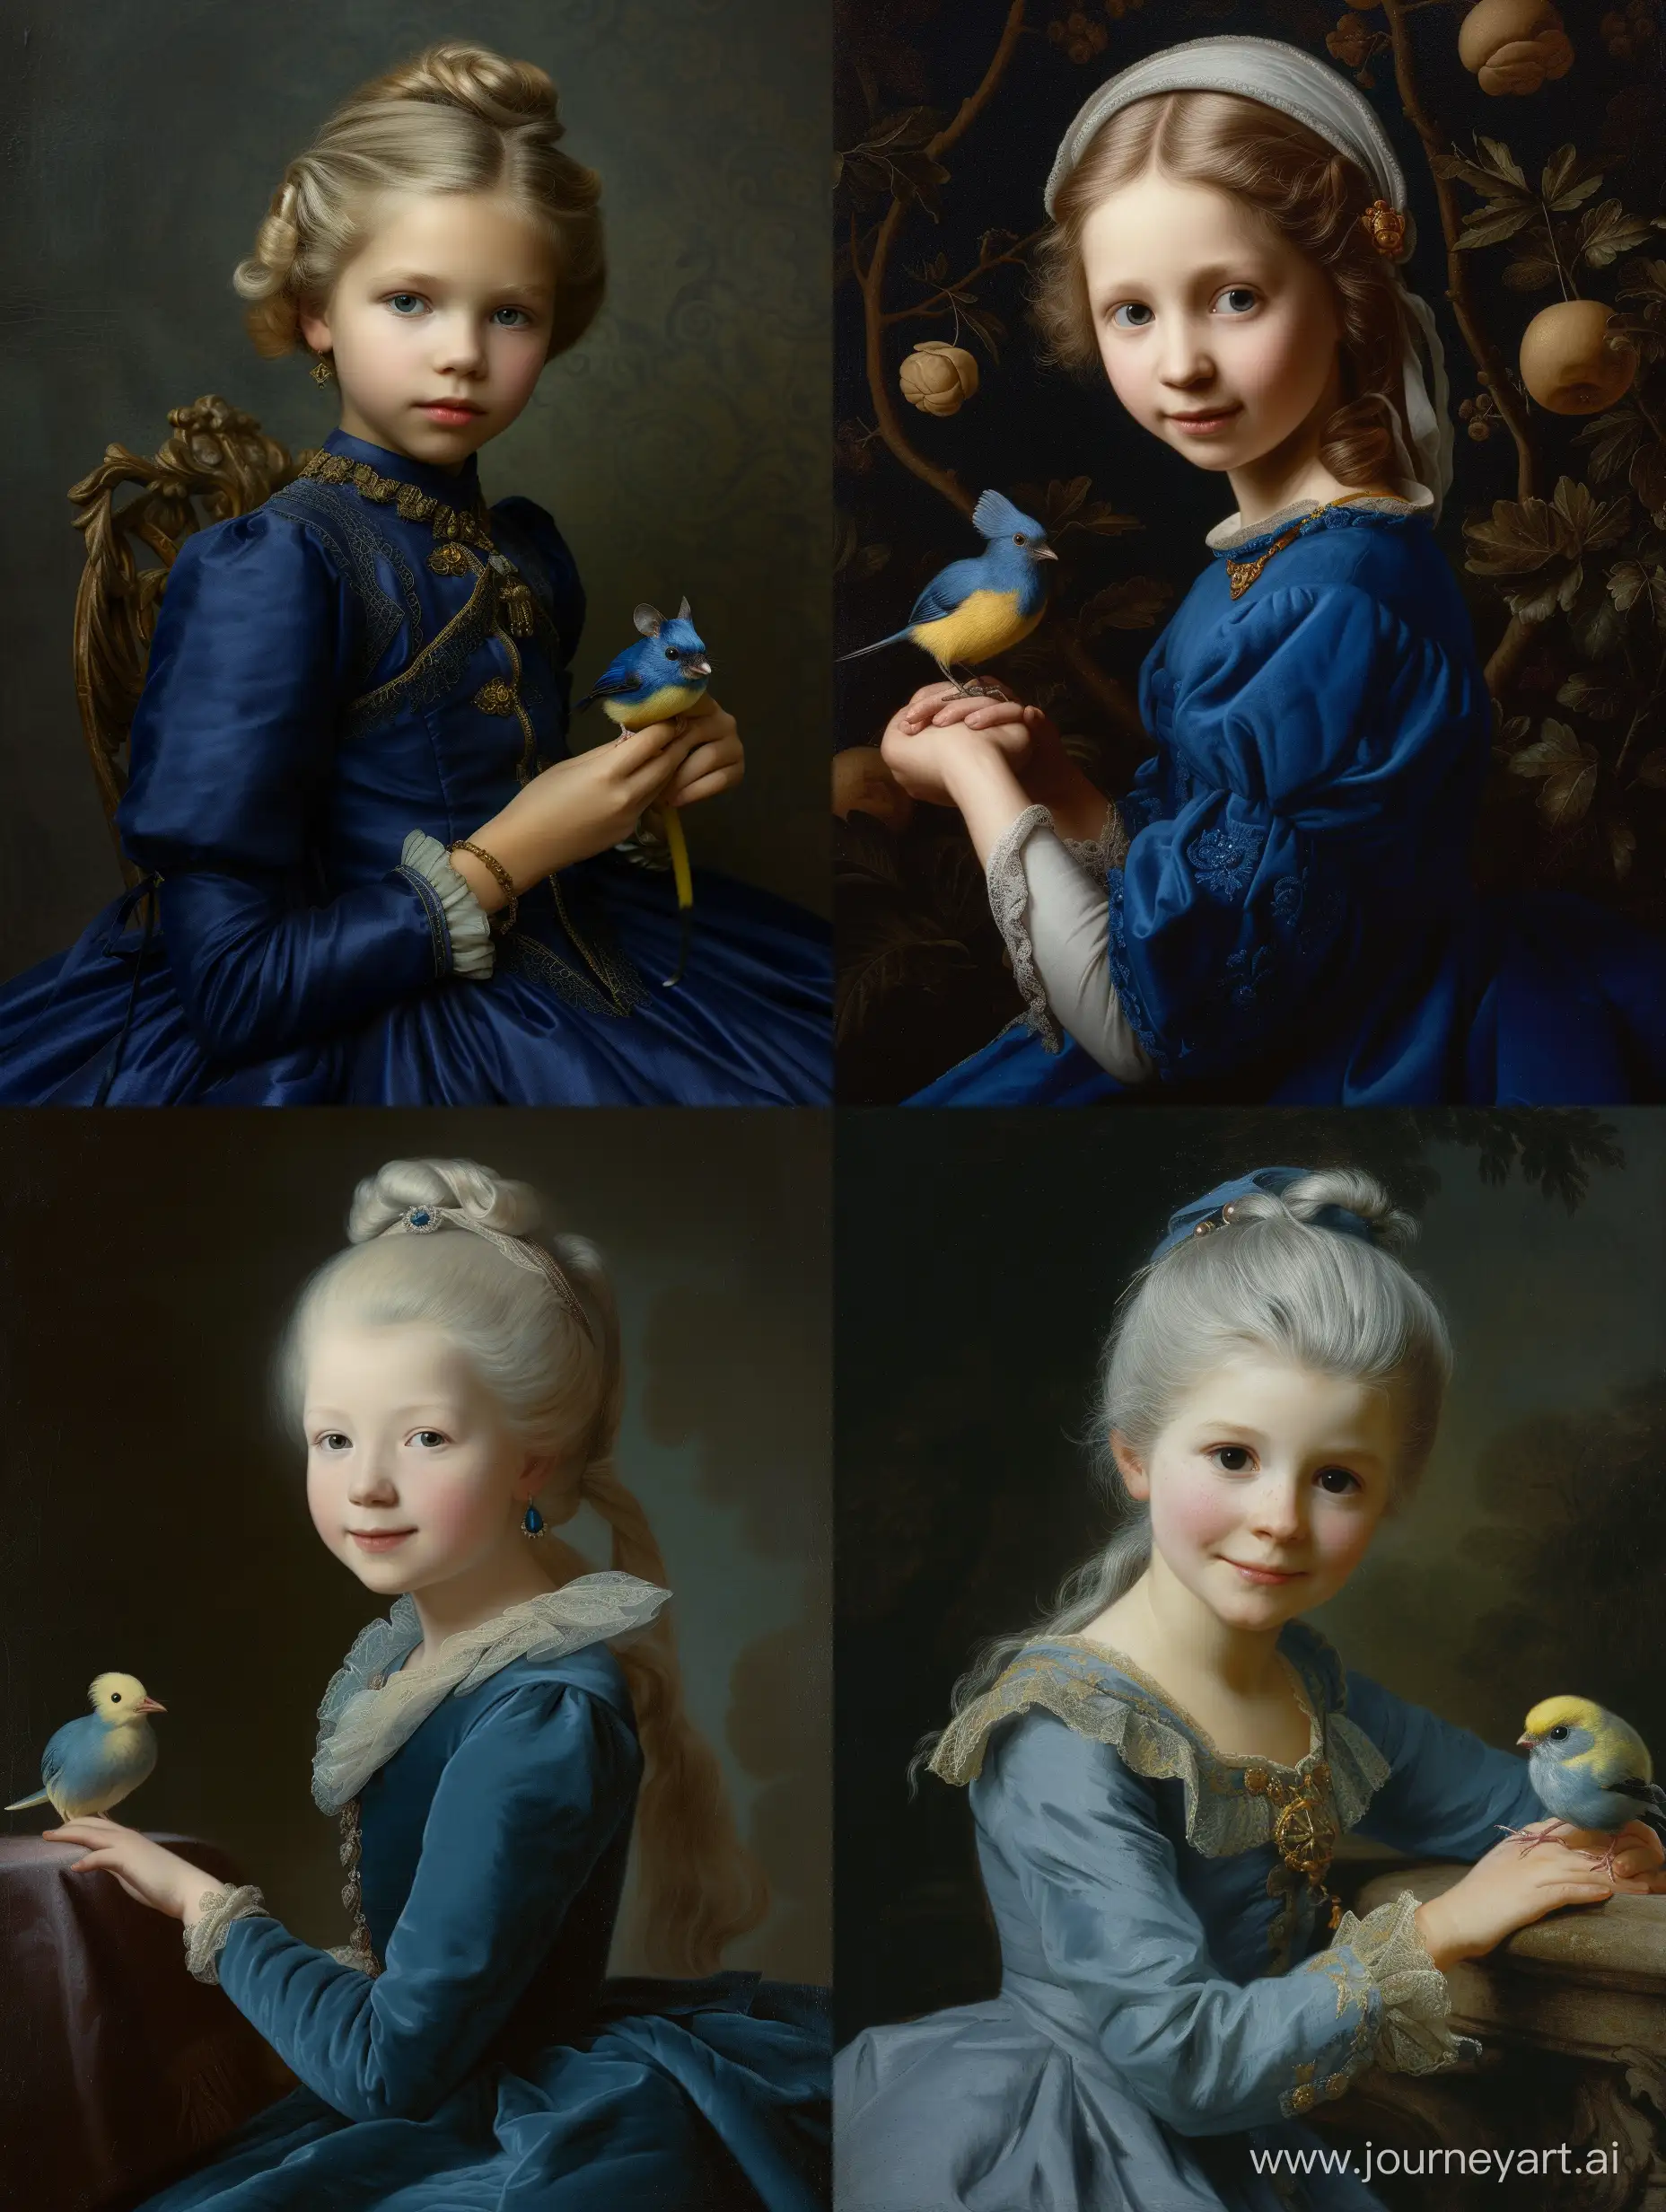 у светловолосой девушки с собранными волосами в голубом имперском платье на руке сидит сине-желтая синица